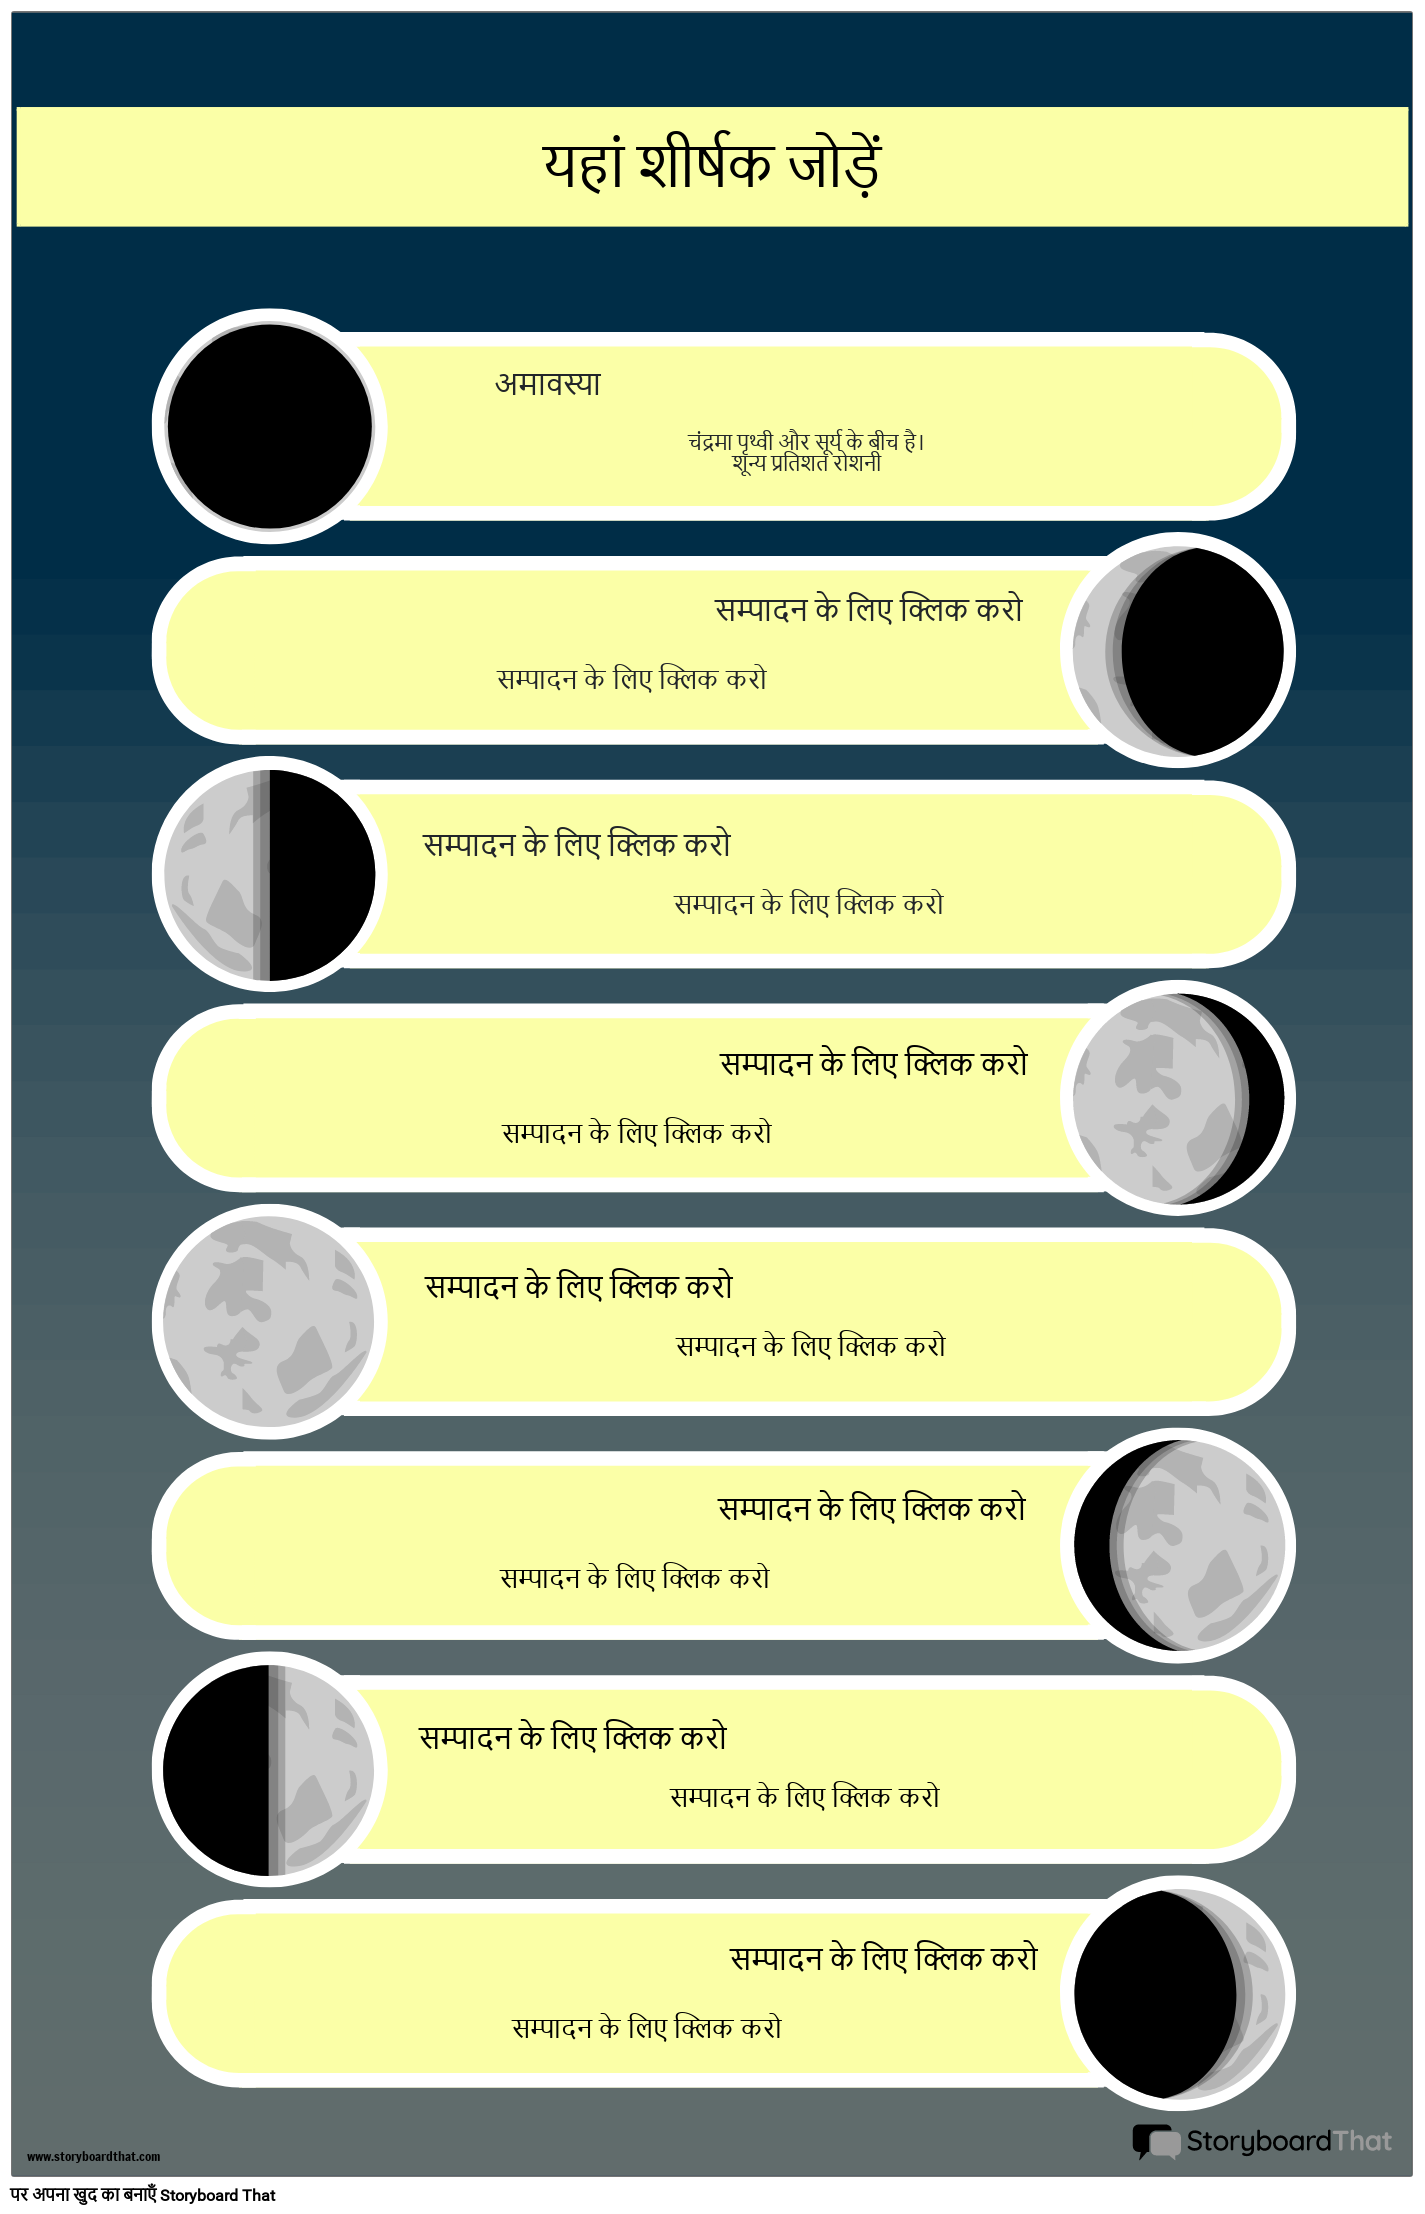 चंद्रमा के पोस्टर के आठ चरण